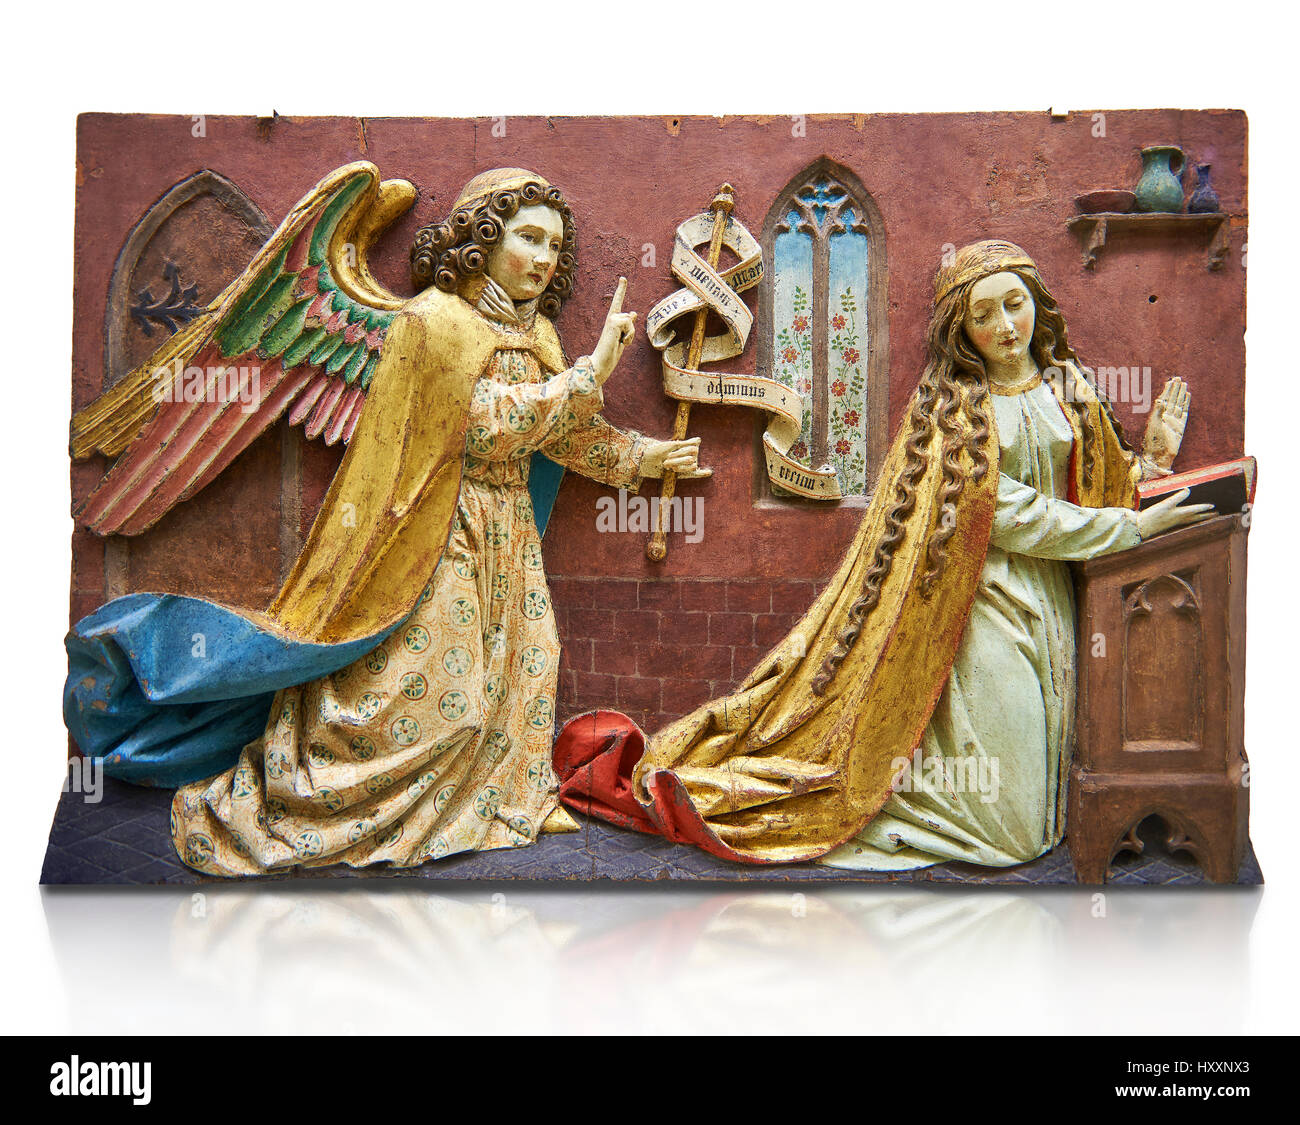 Panneau peint de l'Annonciation de secours de la Vierge, peut-être du 16ème siècle, Tyrol, Autriche. Inv 2352 Musée du Louvre, Paris. Banque D'Images